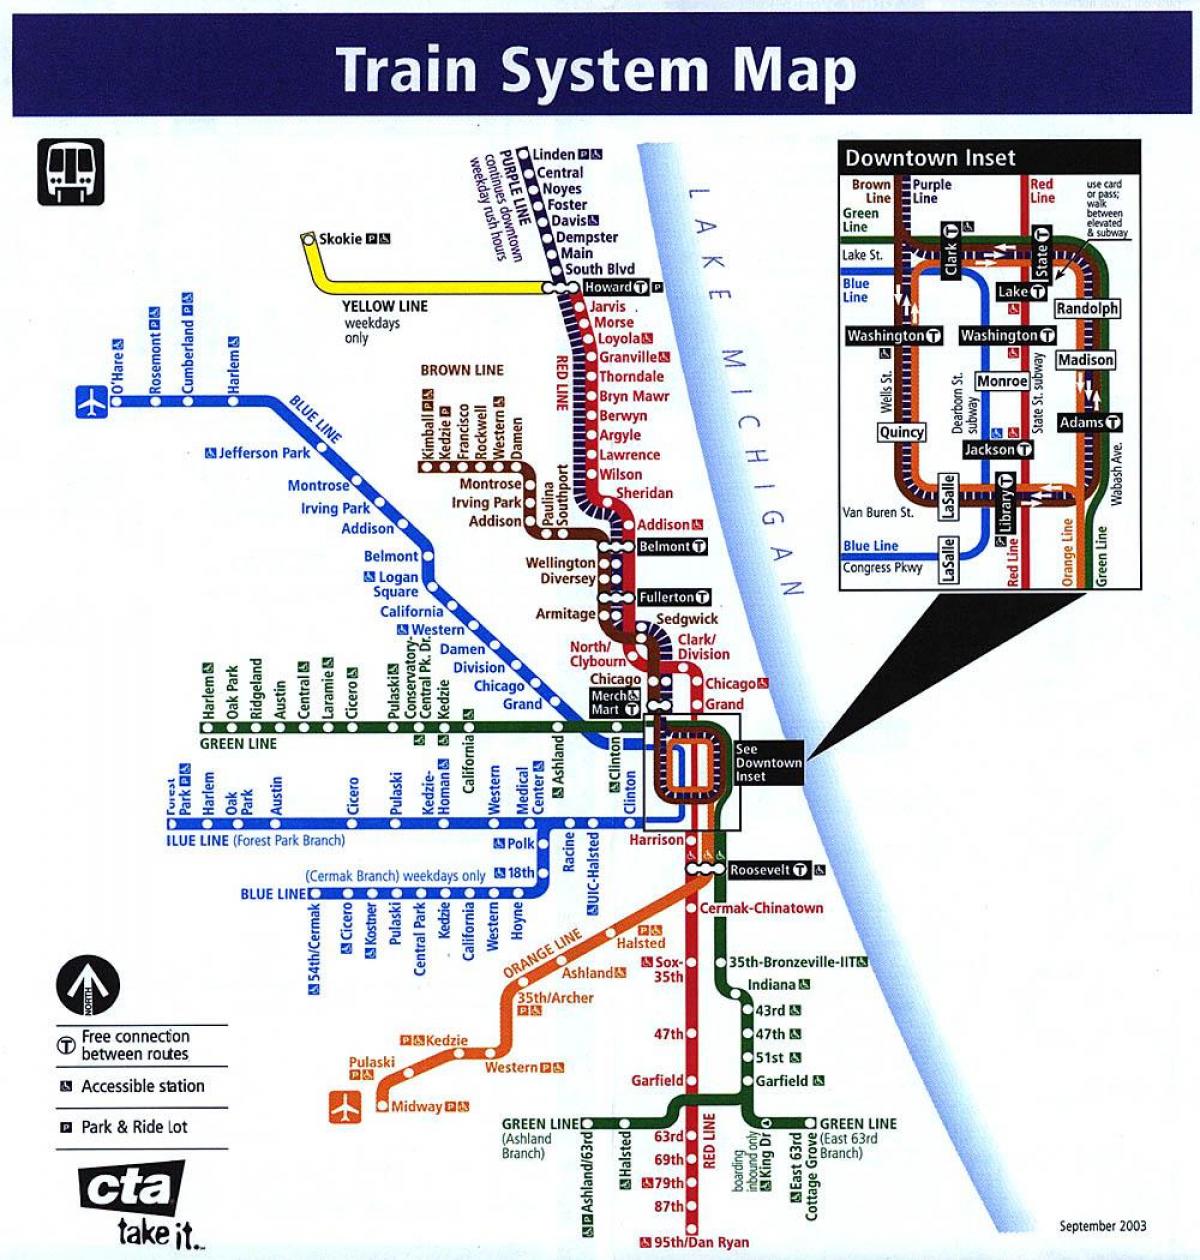 Մետրոյի Չիկագոյում գծերի քարտեզի վրա